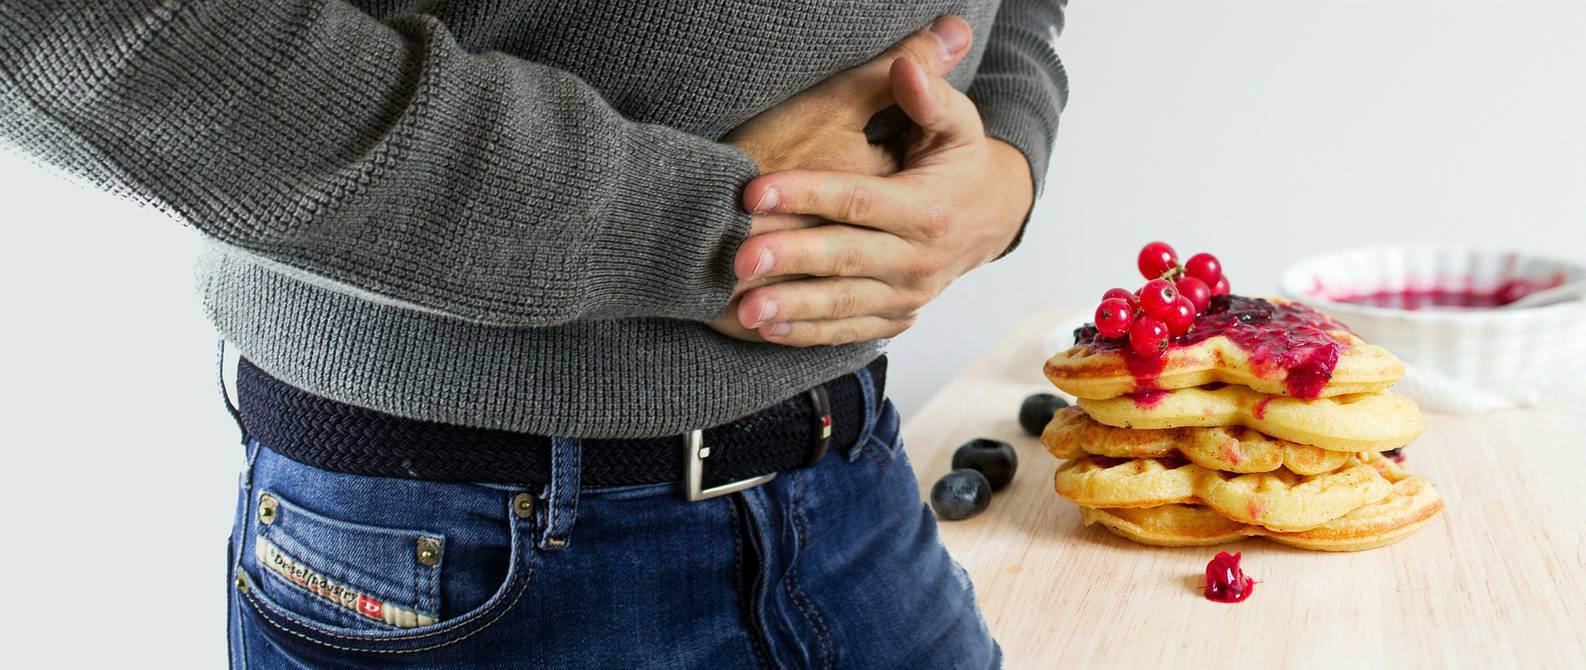 Remedios caseros para aliviar el malestar estomacal y la indigestión |  Salud | La Revista | El Universo